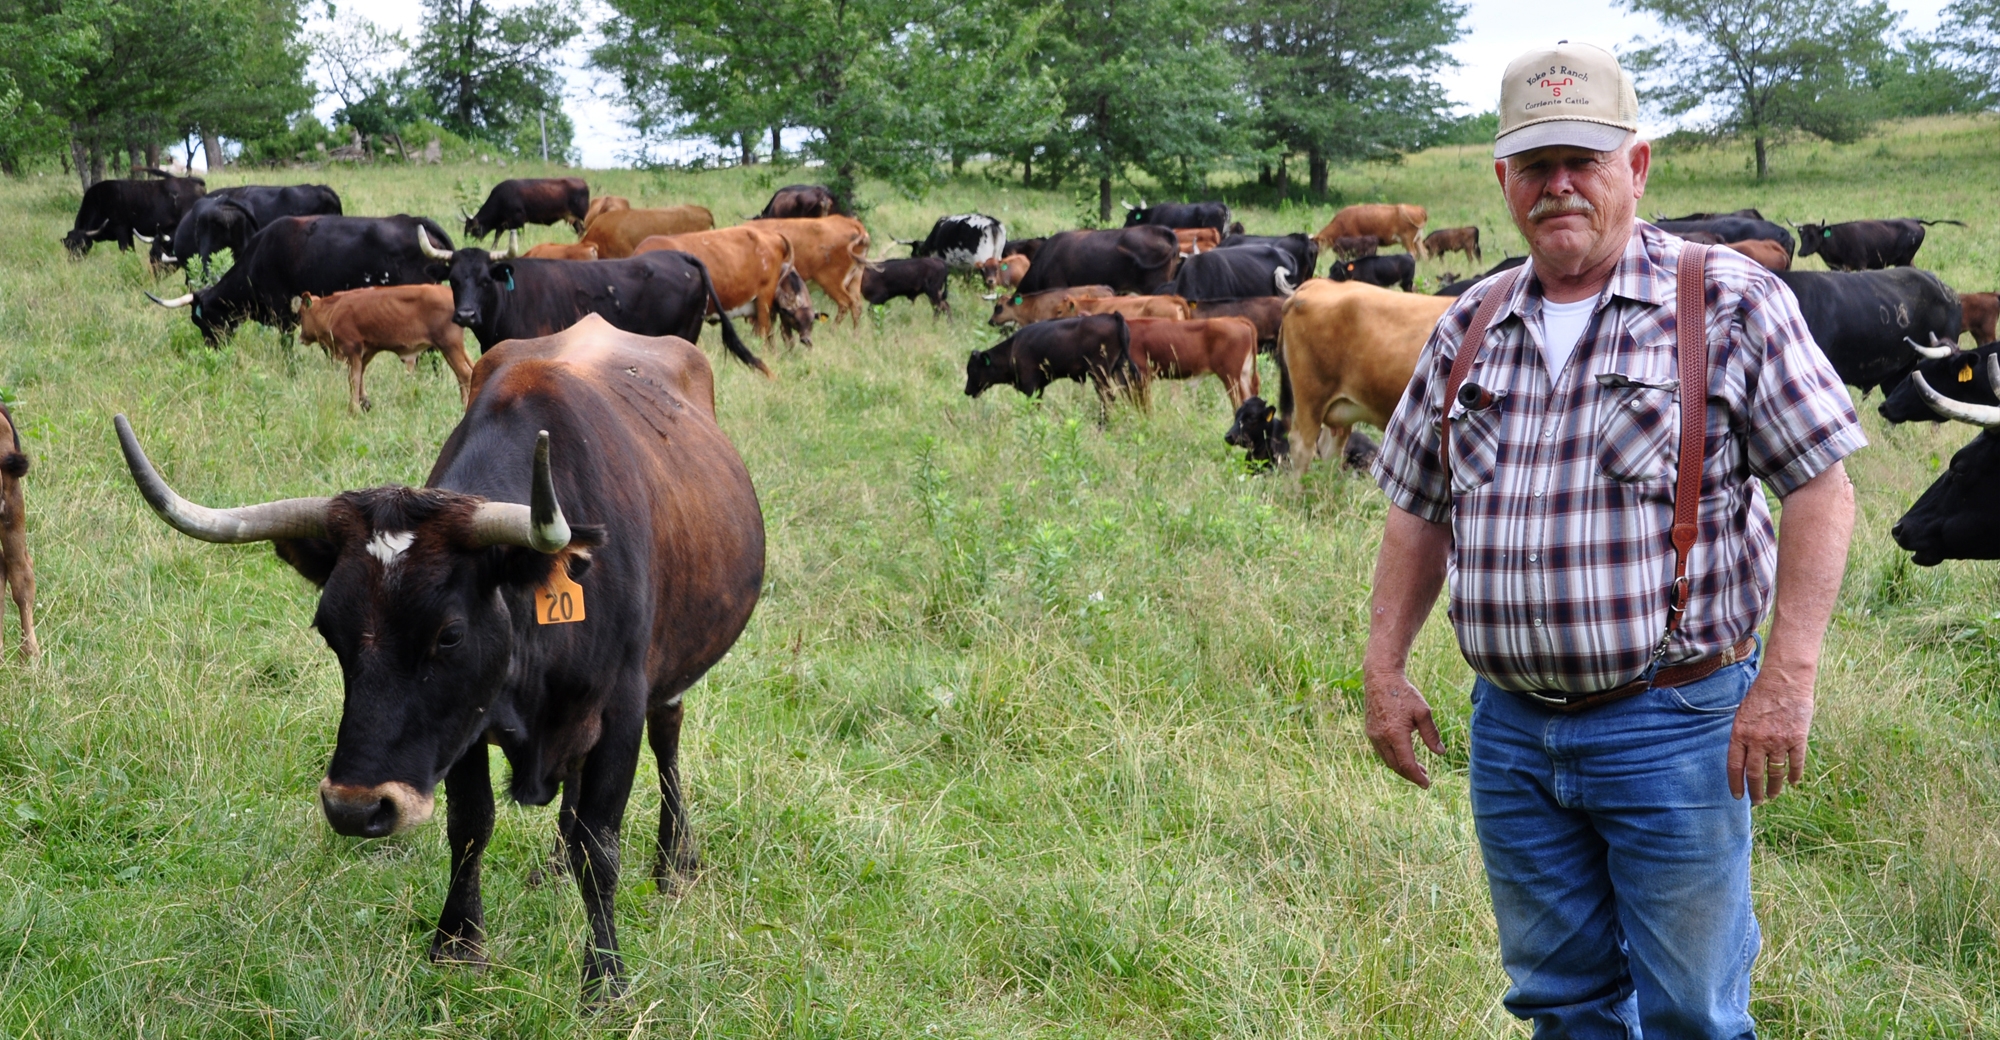 Corriente cattle: A unique breed | Farm Progress